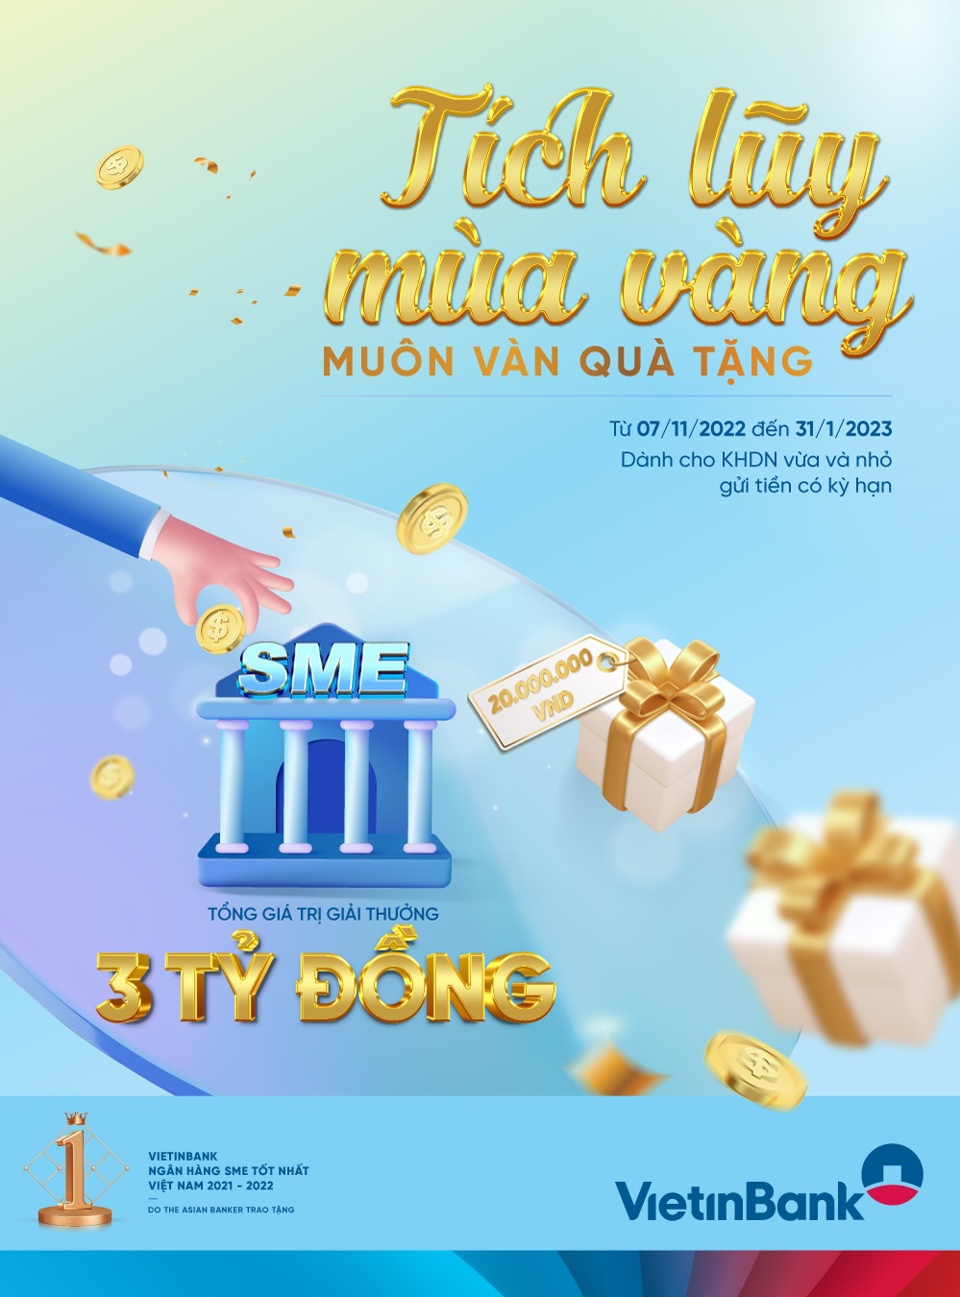 3 tỉ đồng dành tặng doanh nghiệp SME gửi tiền tại VietinBank - Ảnh 1